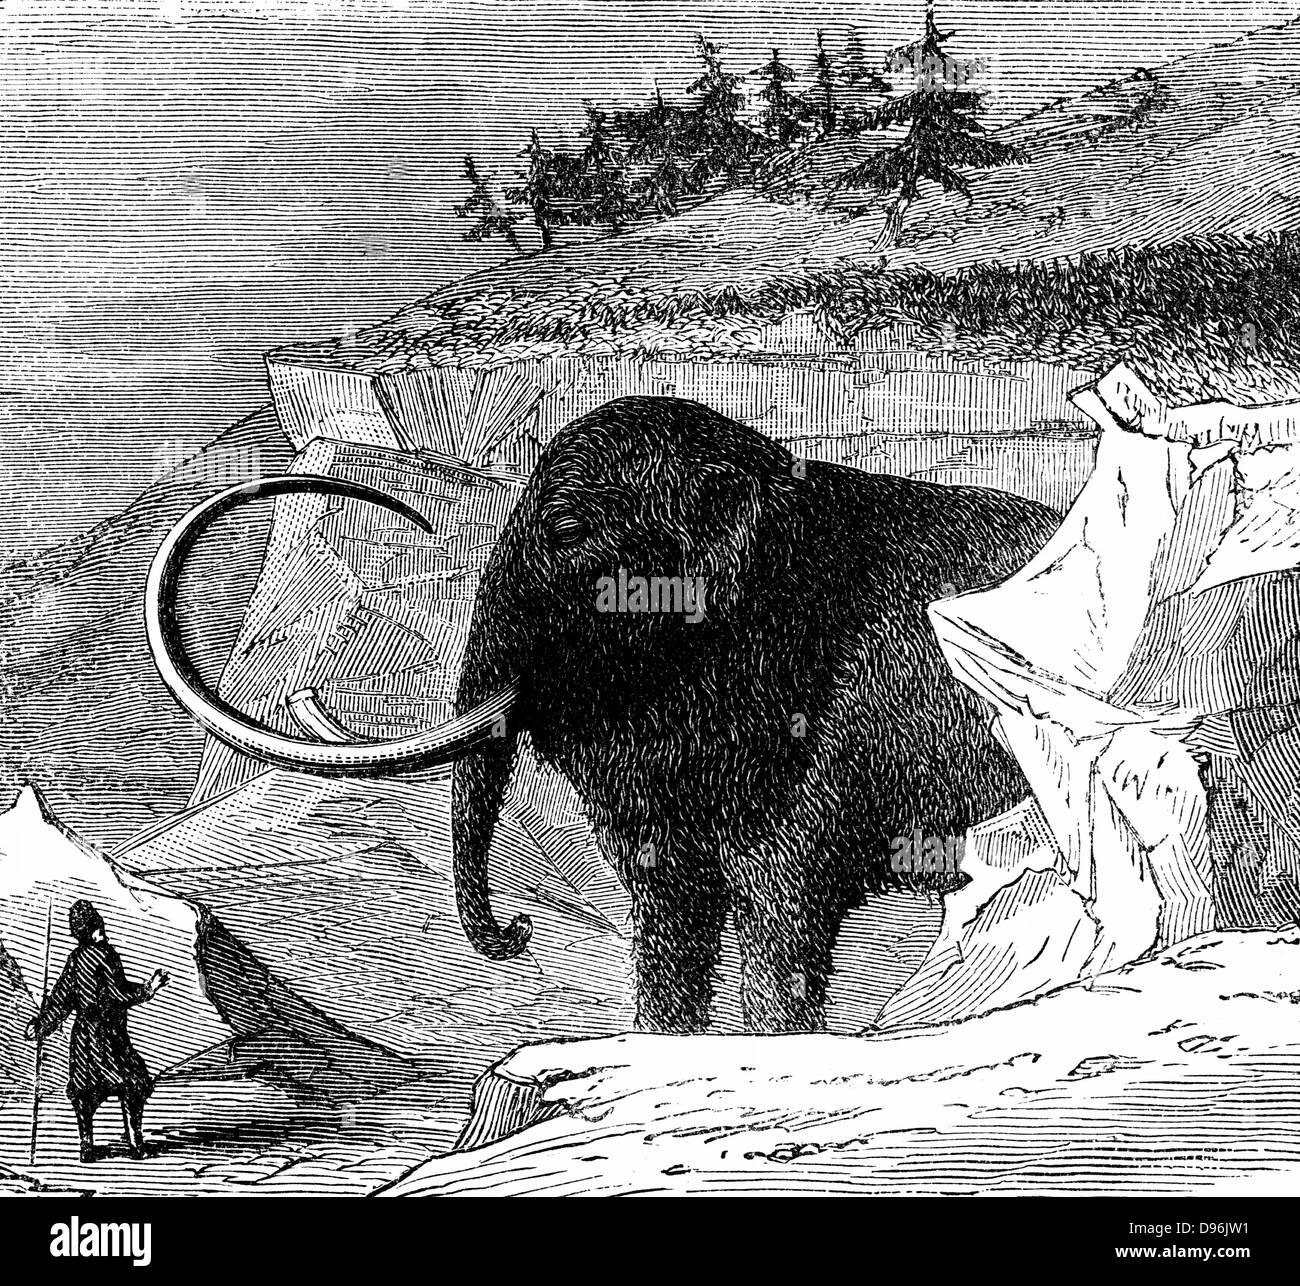 Le mammouth environ 9m de haut et 16 pieds de long, découvert congelé dans un bloc de glace en Sibérie, 1779. Gravure c1870 Banque D'Images